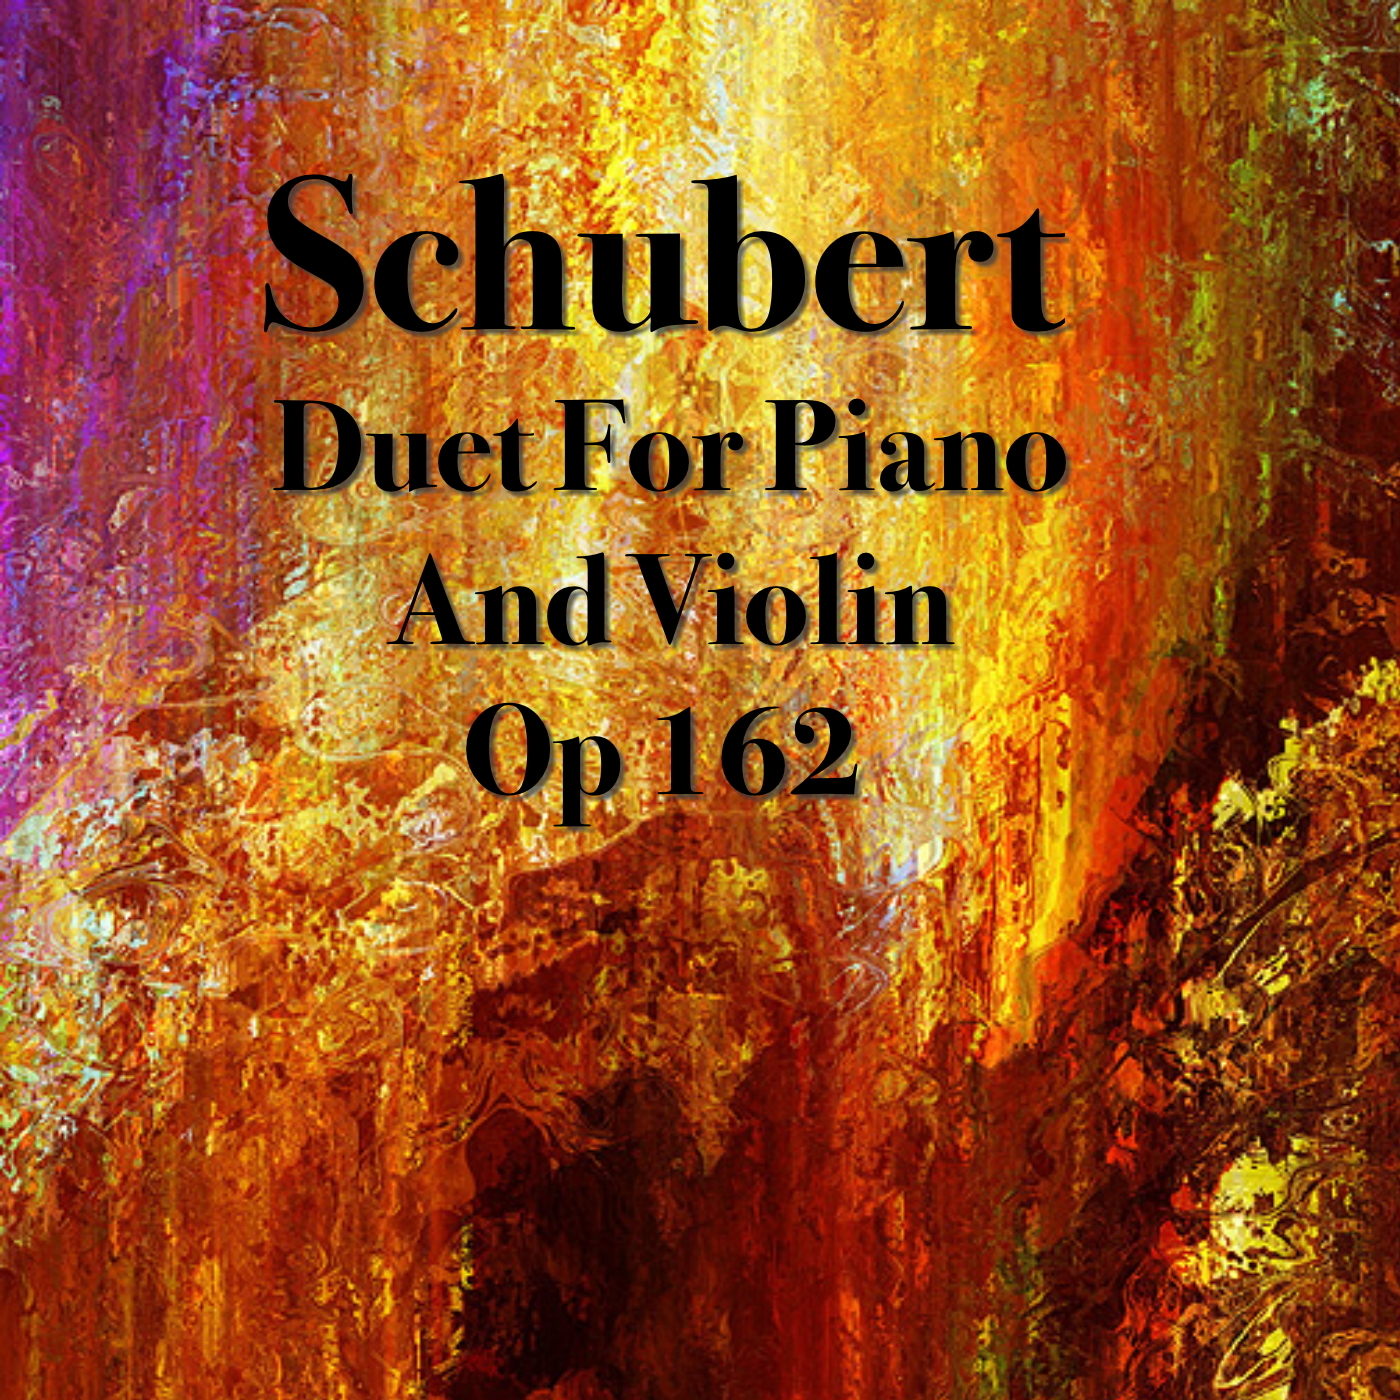 Schubert Duet for Violin & Piano, Op.162, 4